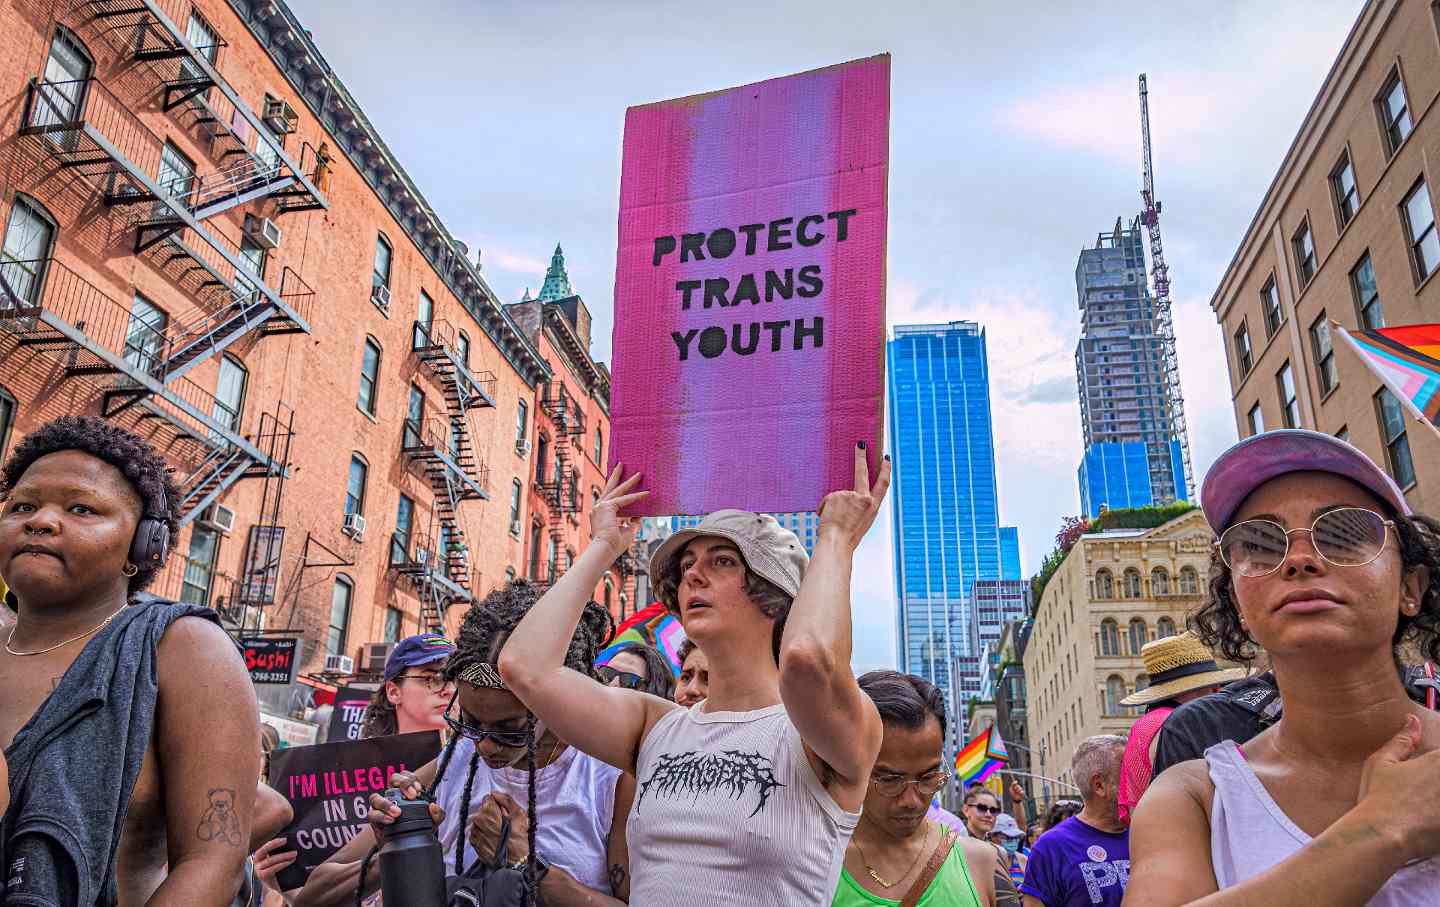 Los demócratas pueden defender a los niños trans y ganar